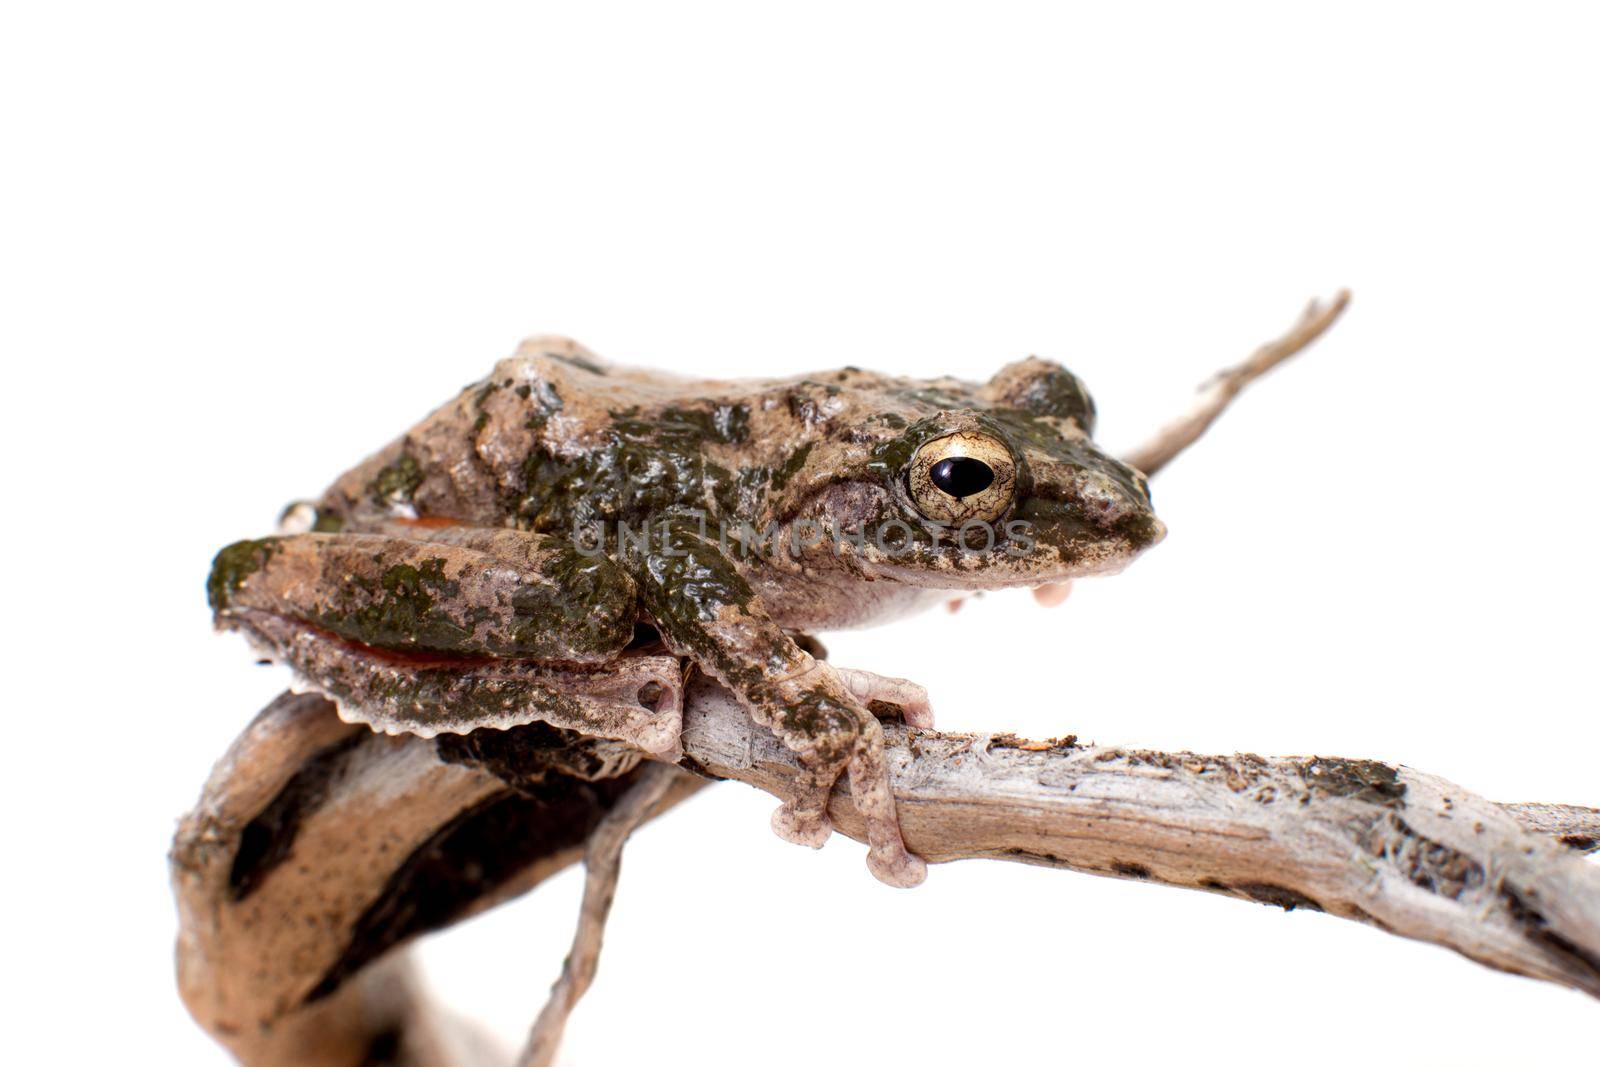 serrate-legged small treefrog, Kurixalus odontotarsus, isolated on white background